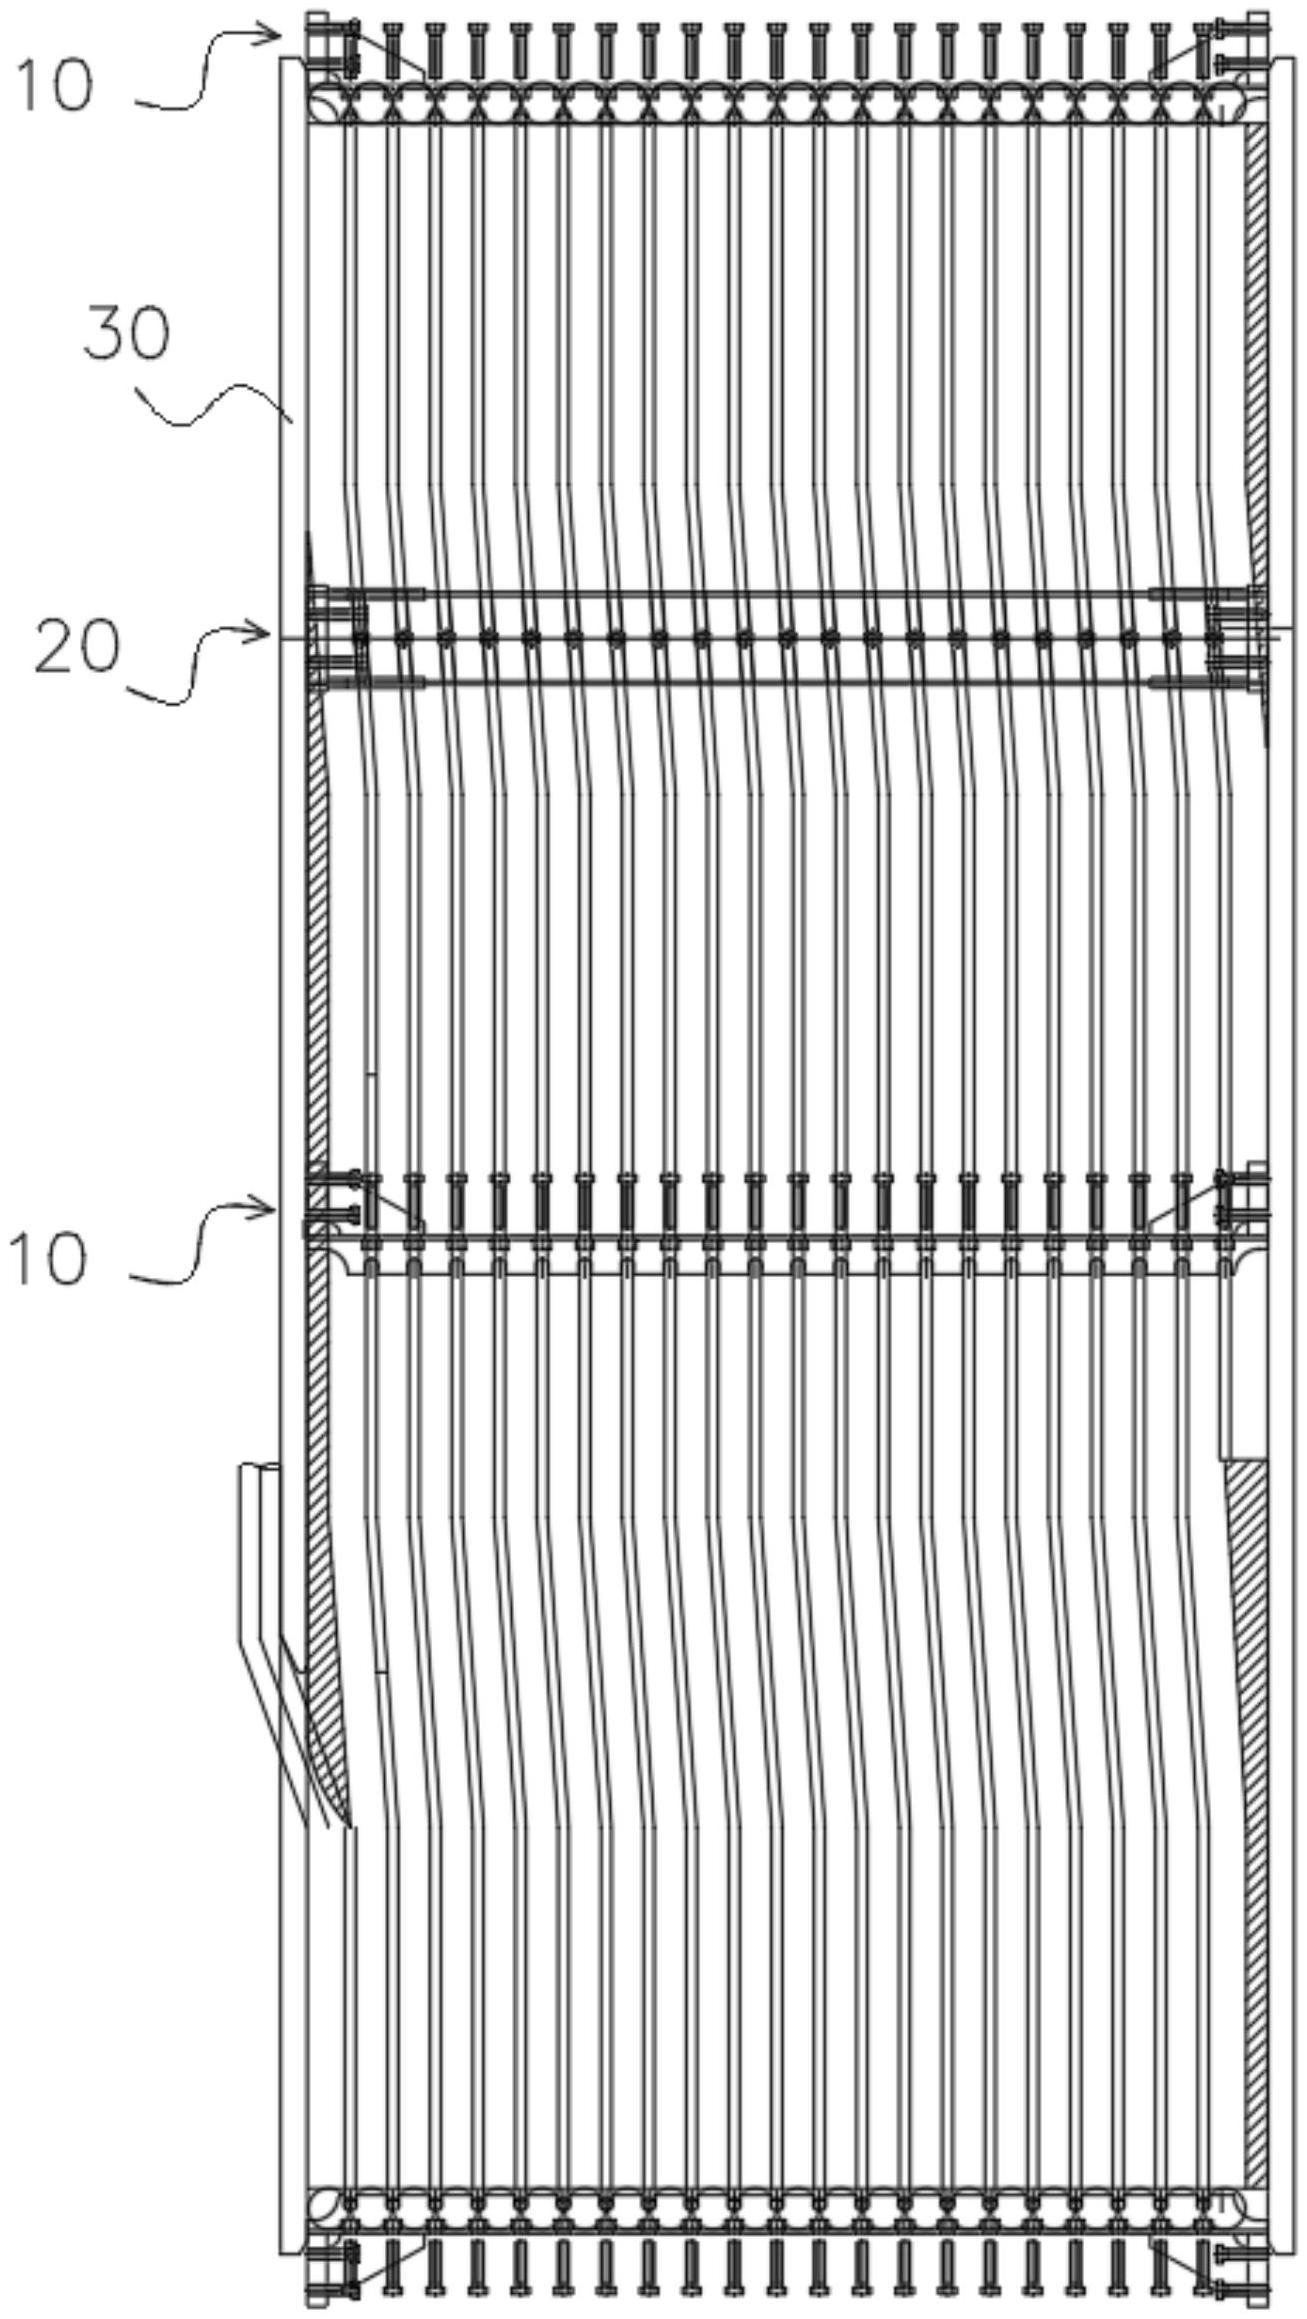 里巴斯绳槽定位装置的制作方法